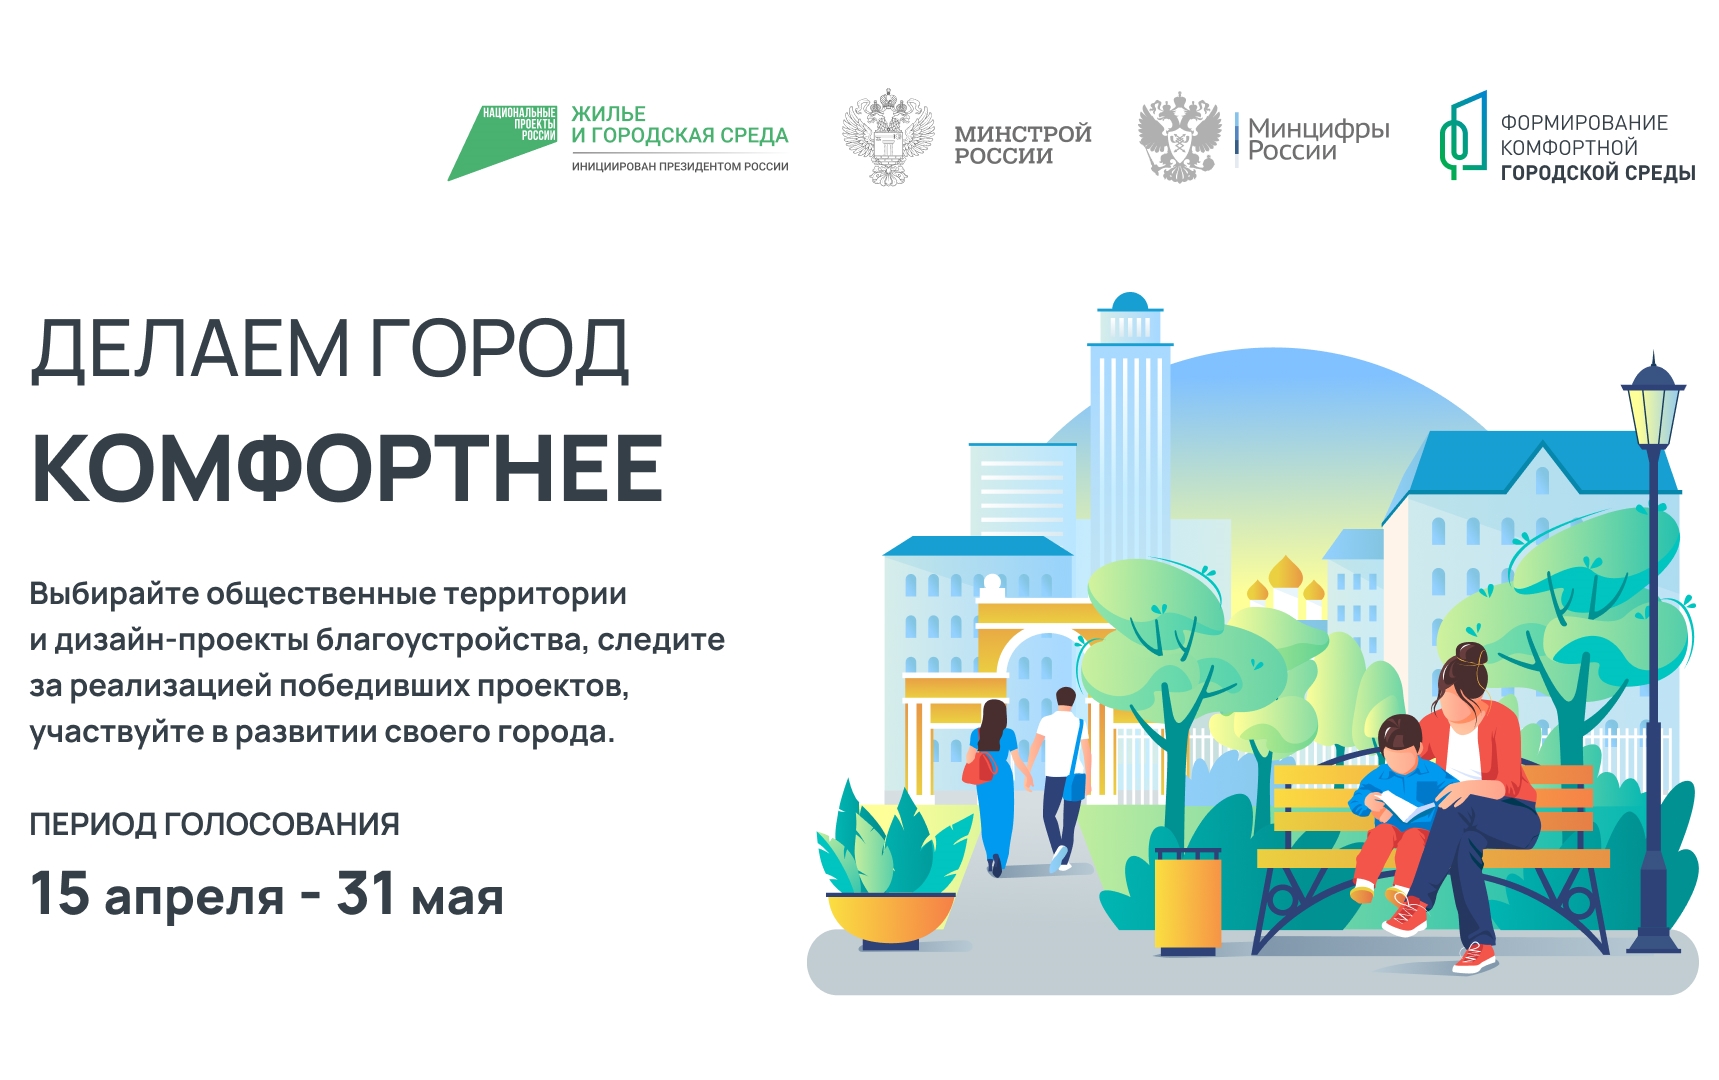 Около 70 тысяч жителей Калужской области уже приняли участие в онлайн-голосовании за благоустройство новых общественных территорий.